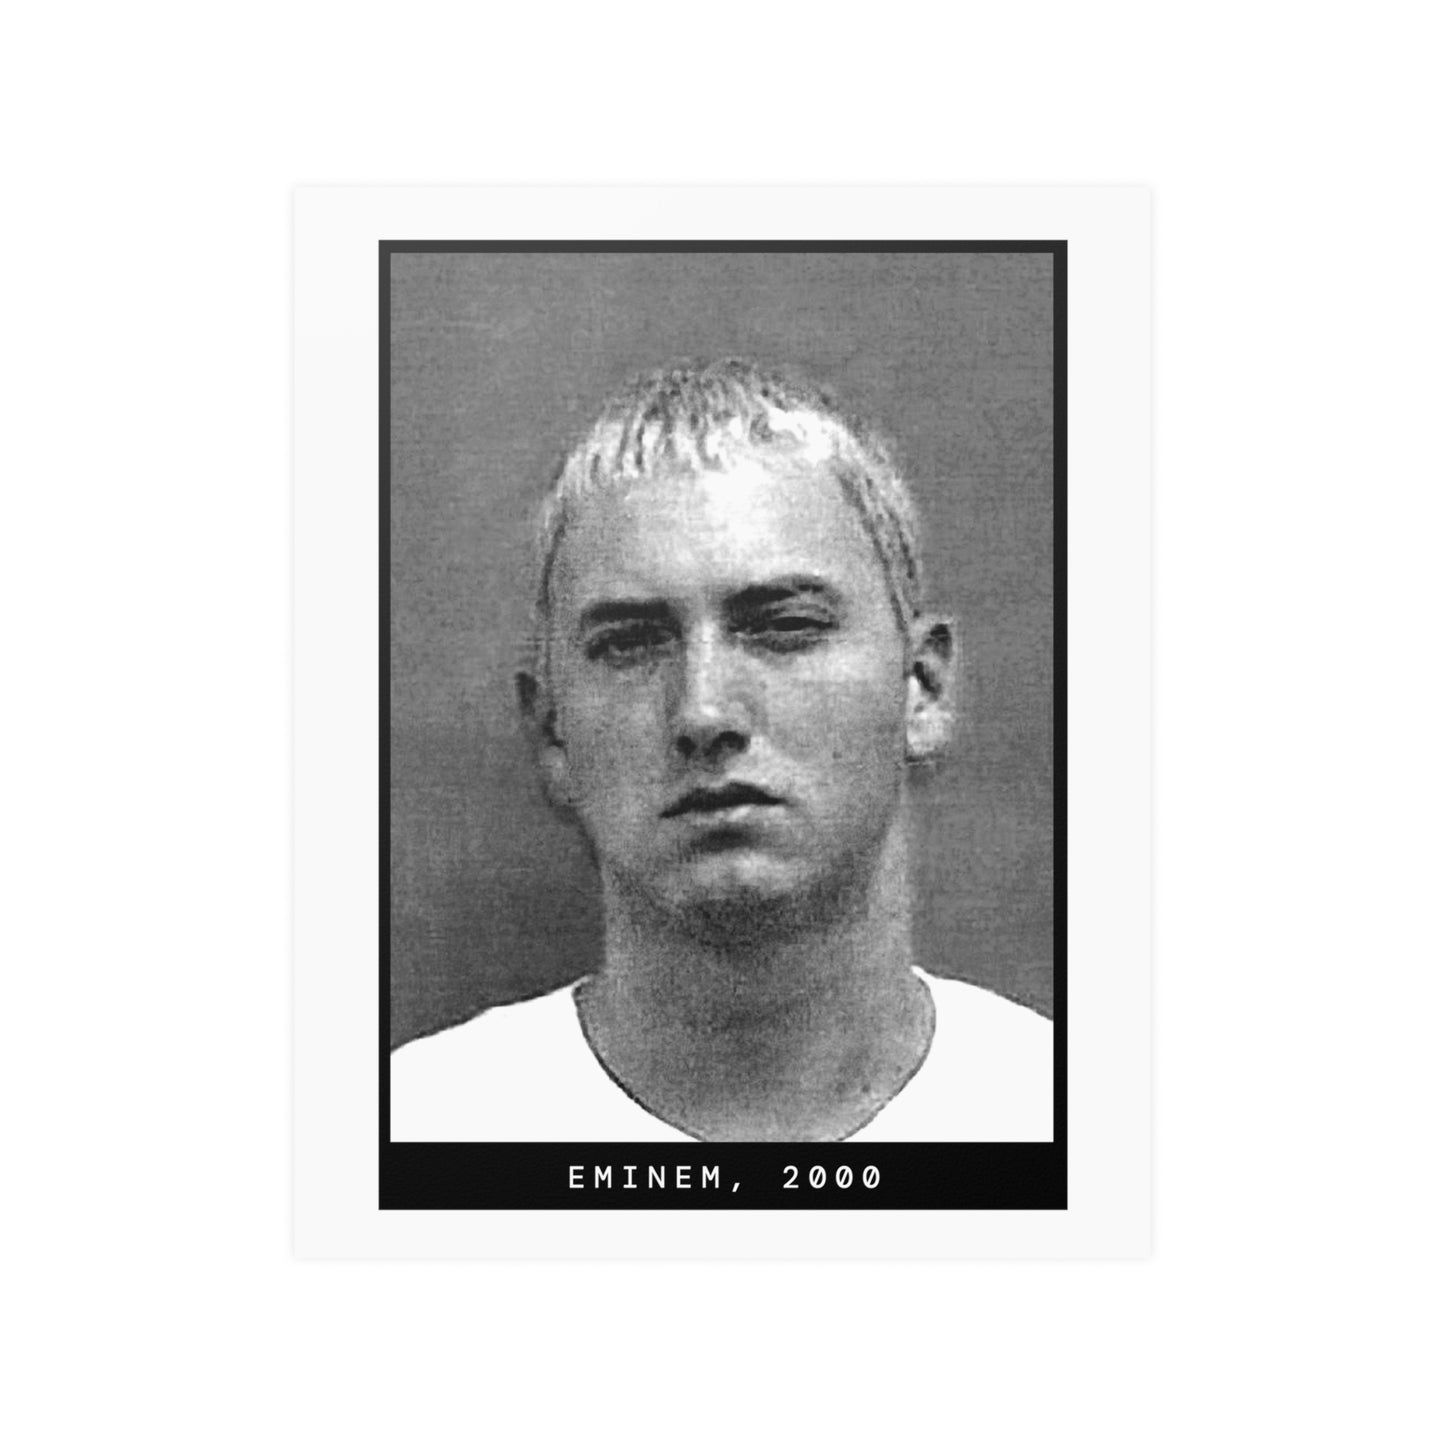 Eminem, 2000 Rapper Mugshot Poster